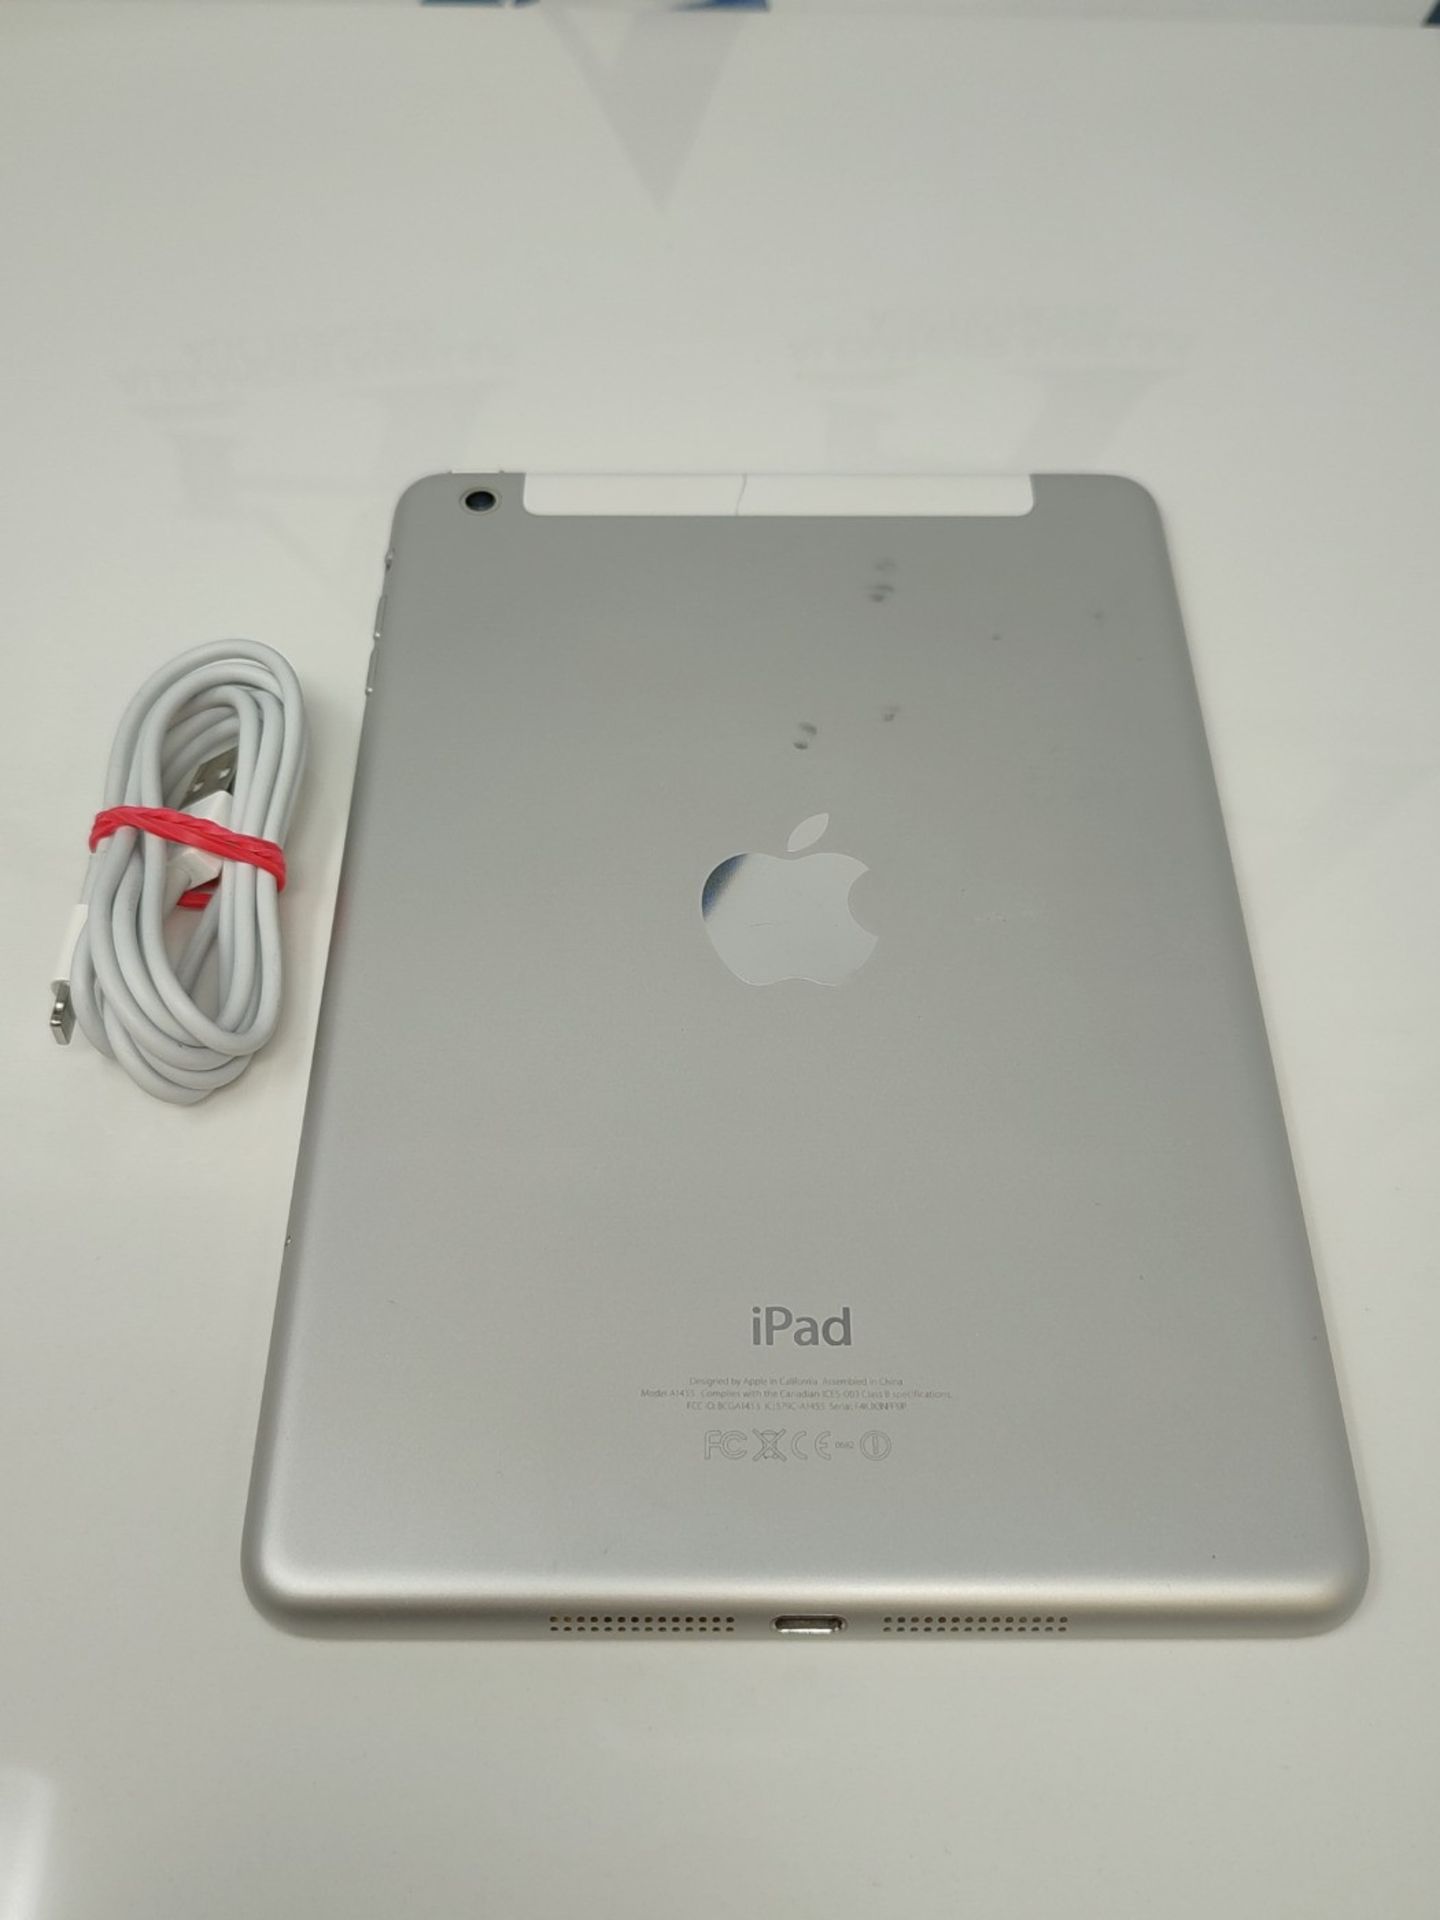 Apple iPad mini A1455 , white - Image 2 of 2